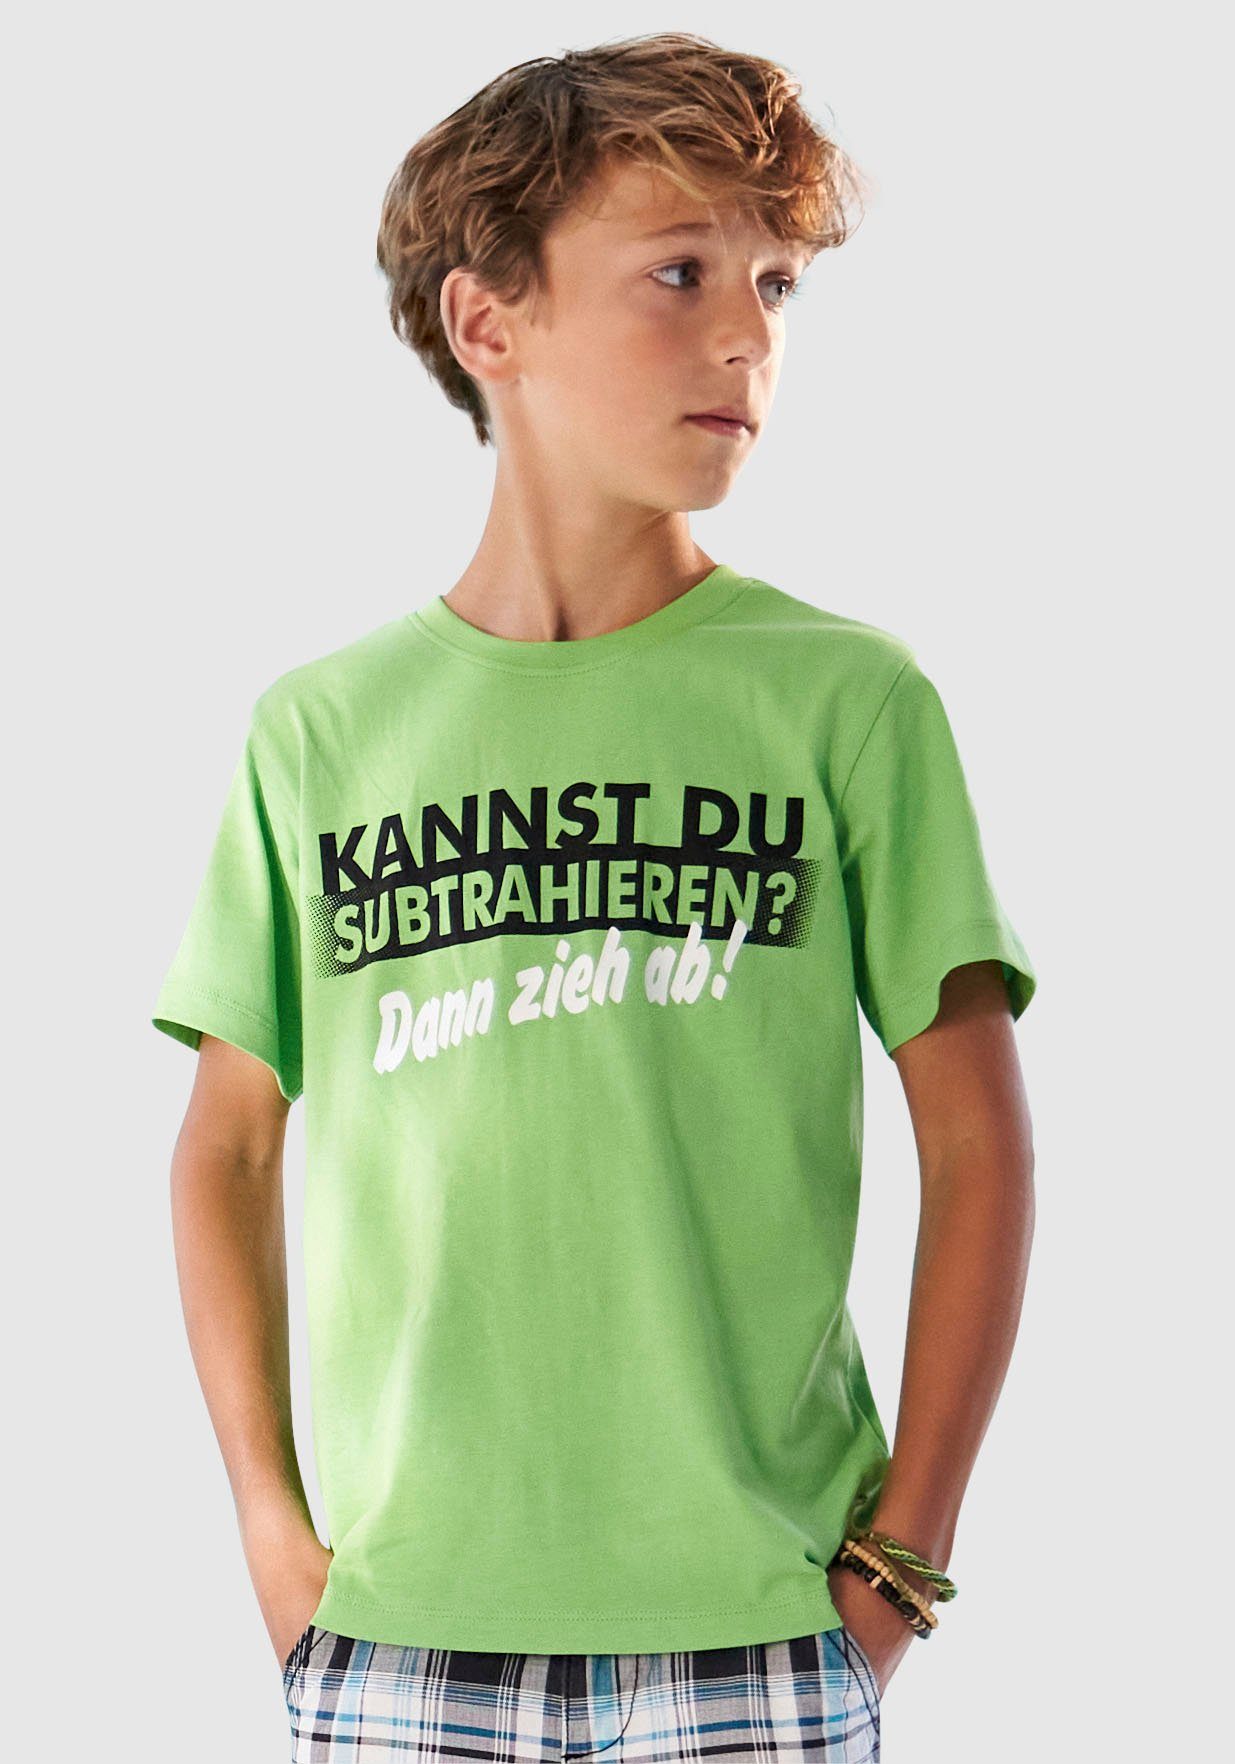 DU SUBTRAHIEREN?, T-Shirt Spruch KIDSWORLD KANNST